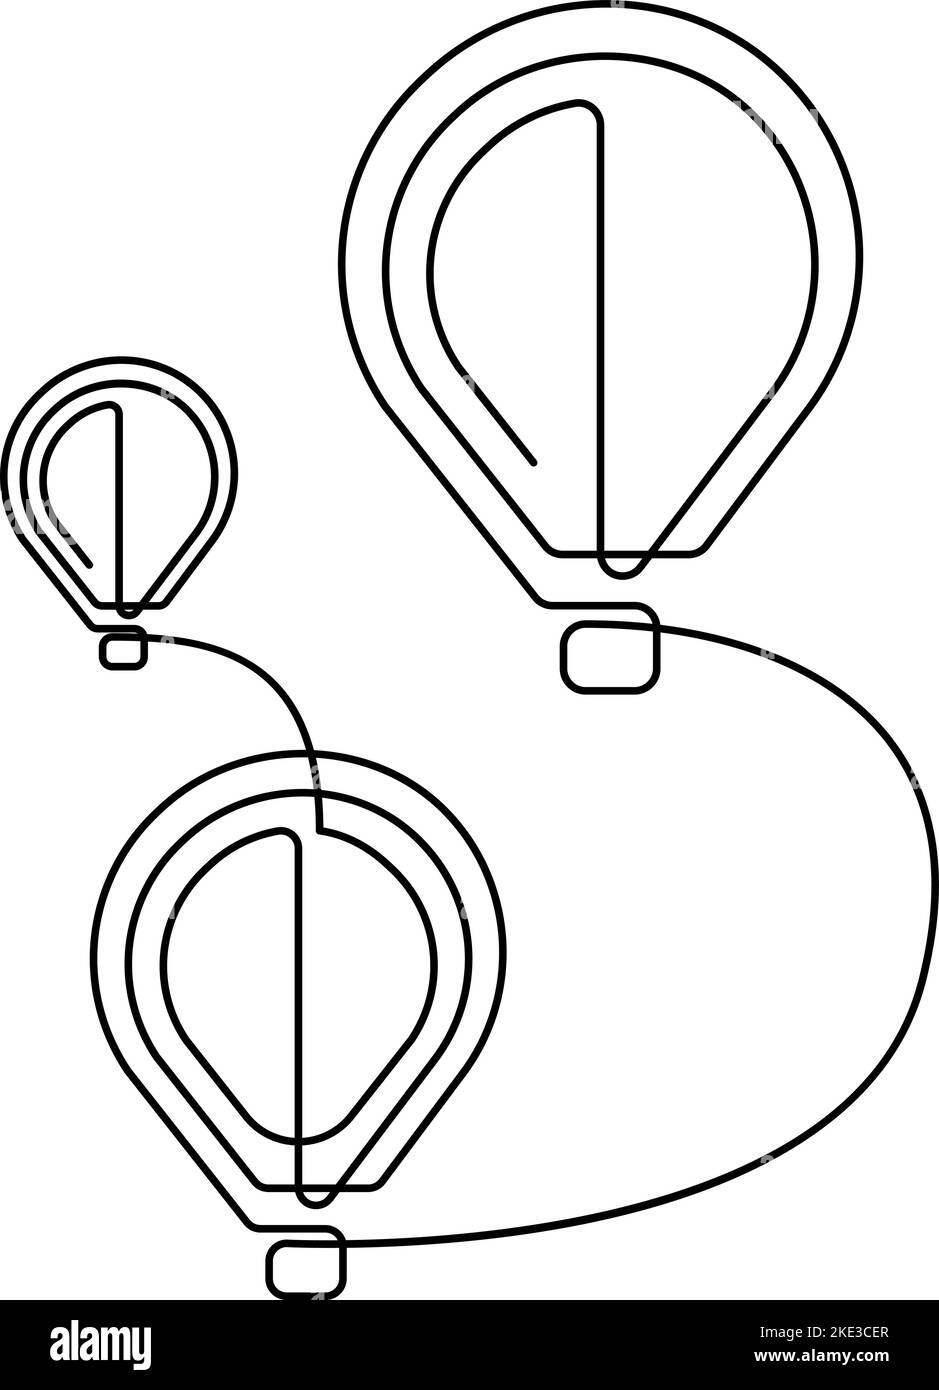 Palloncini ad aria calda che volano con disegno a linea continua. Illustrazione vettoriale Illustrazione Vettoriale